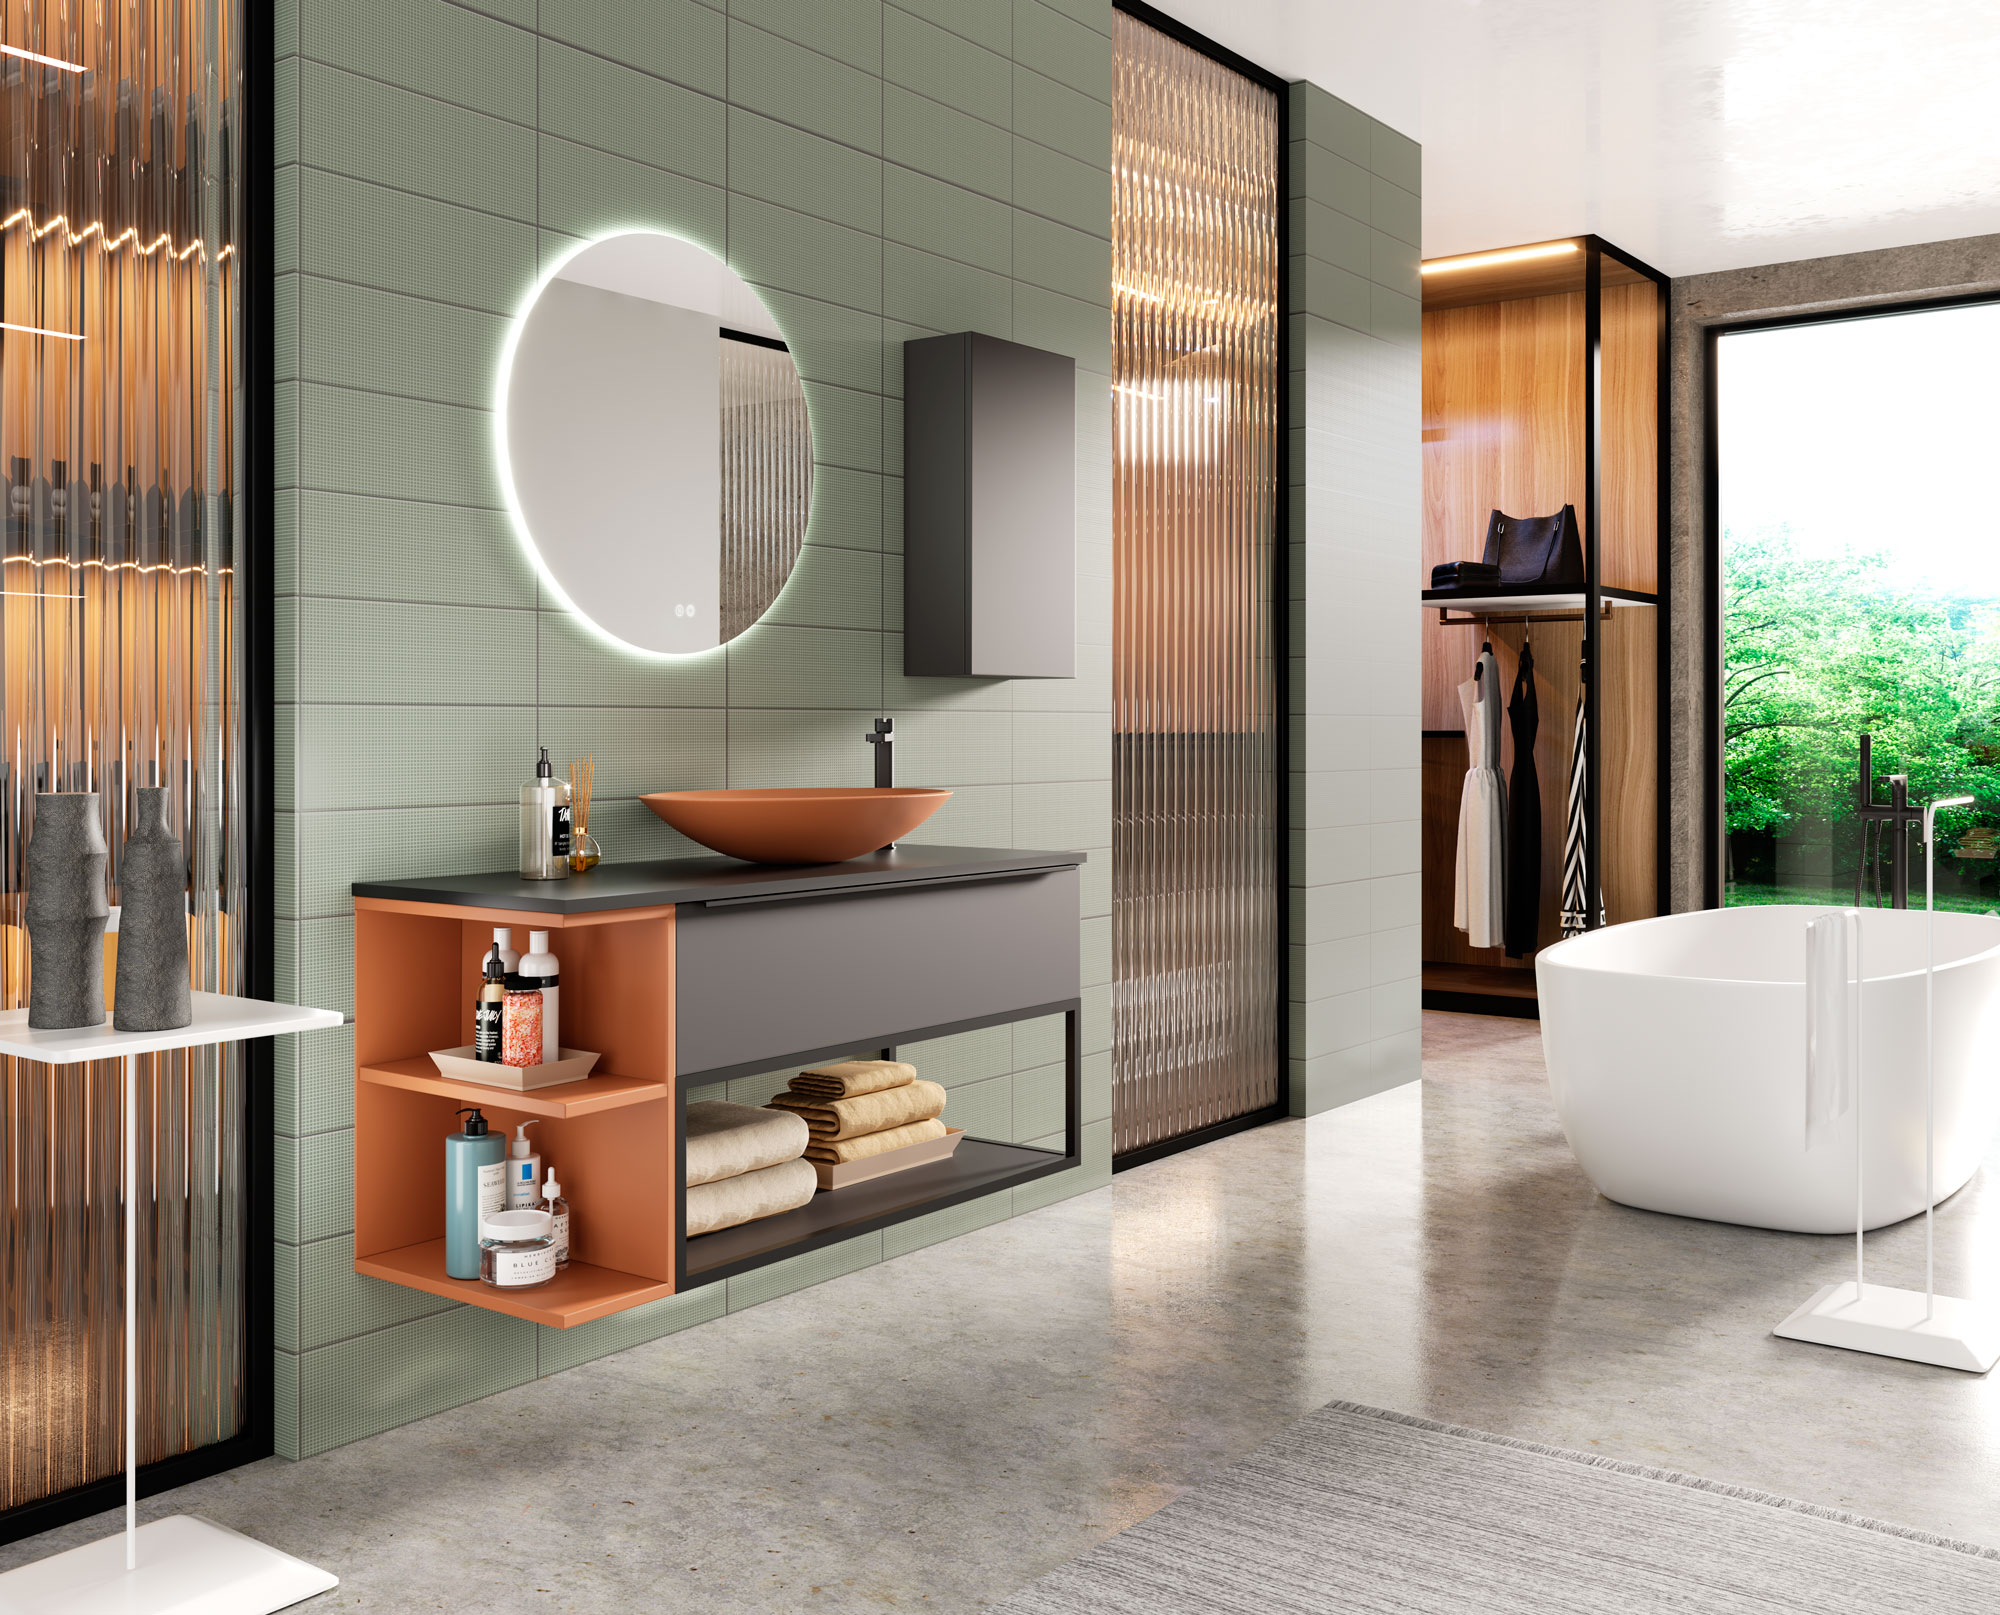 Mueble de baño de suelo de 60 cm con lavabo integrado color musgo Modelo  Granada